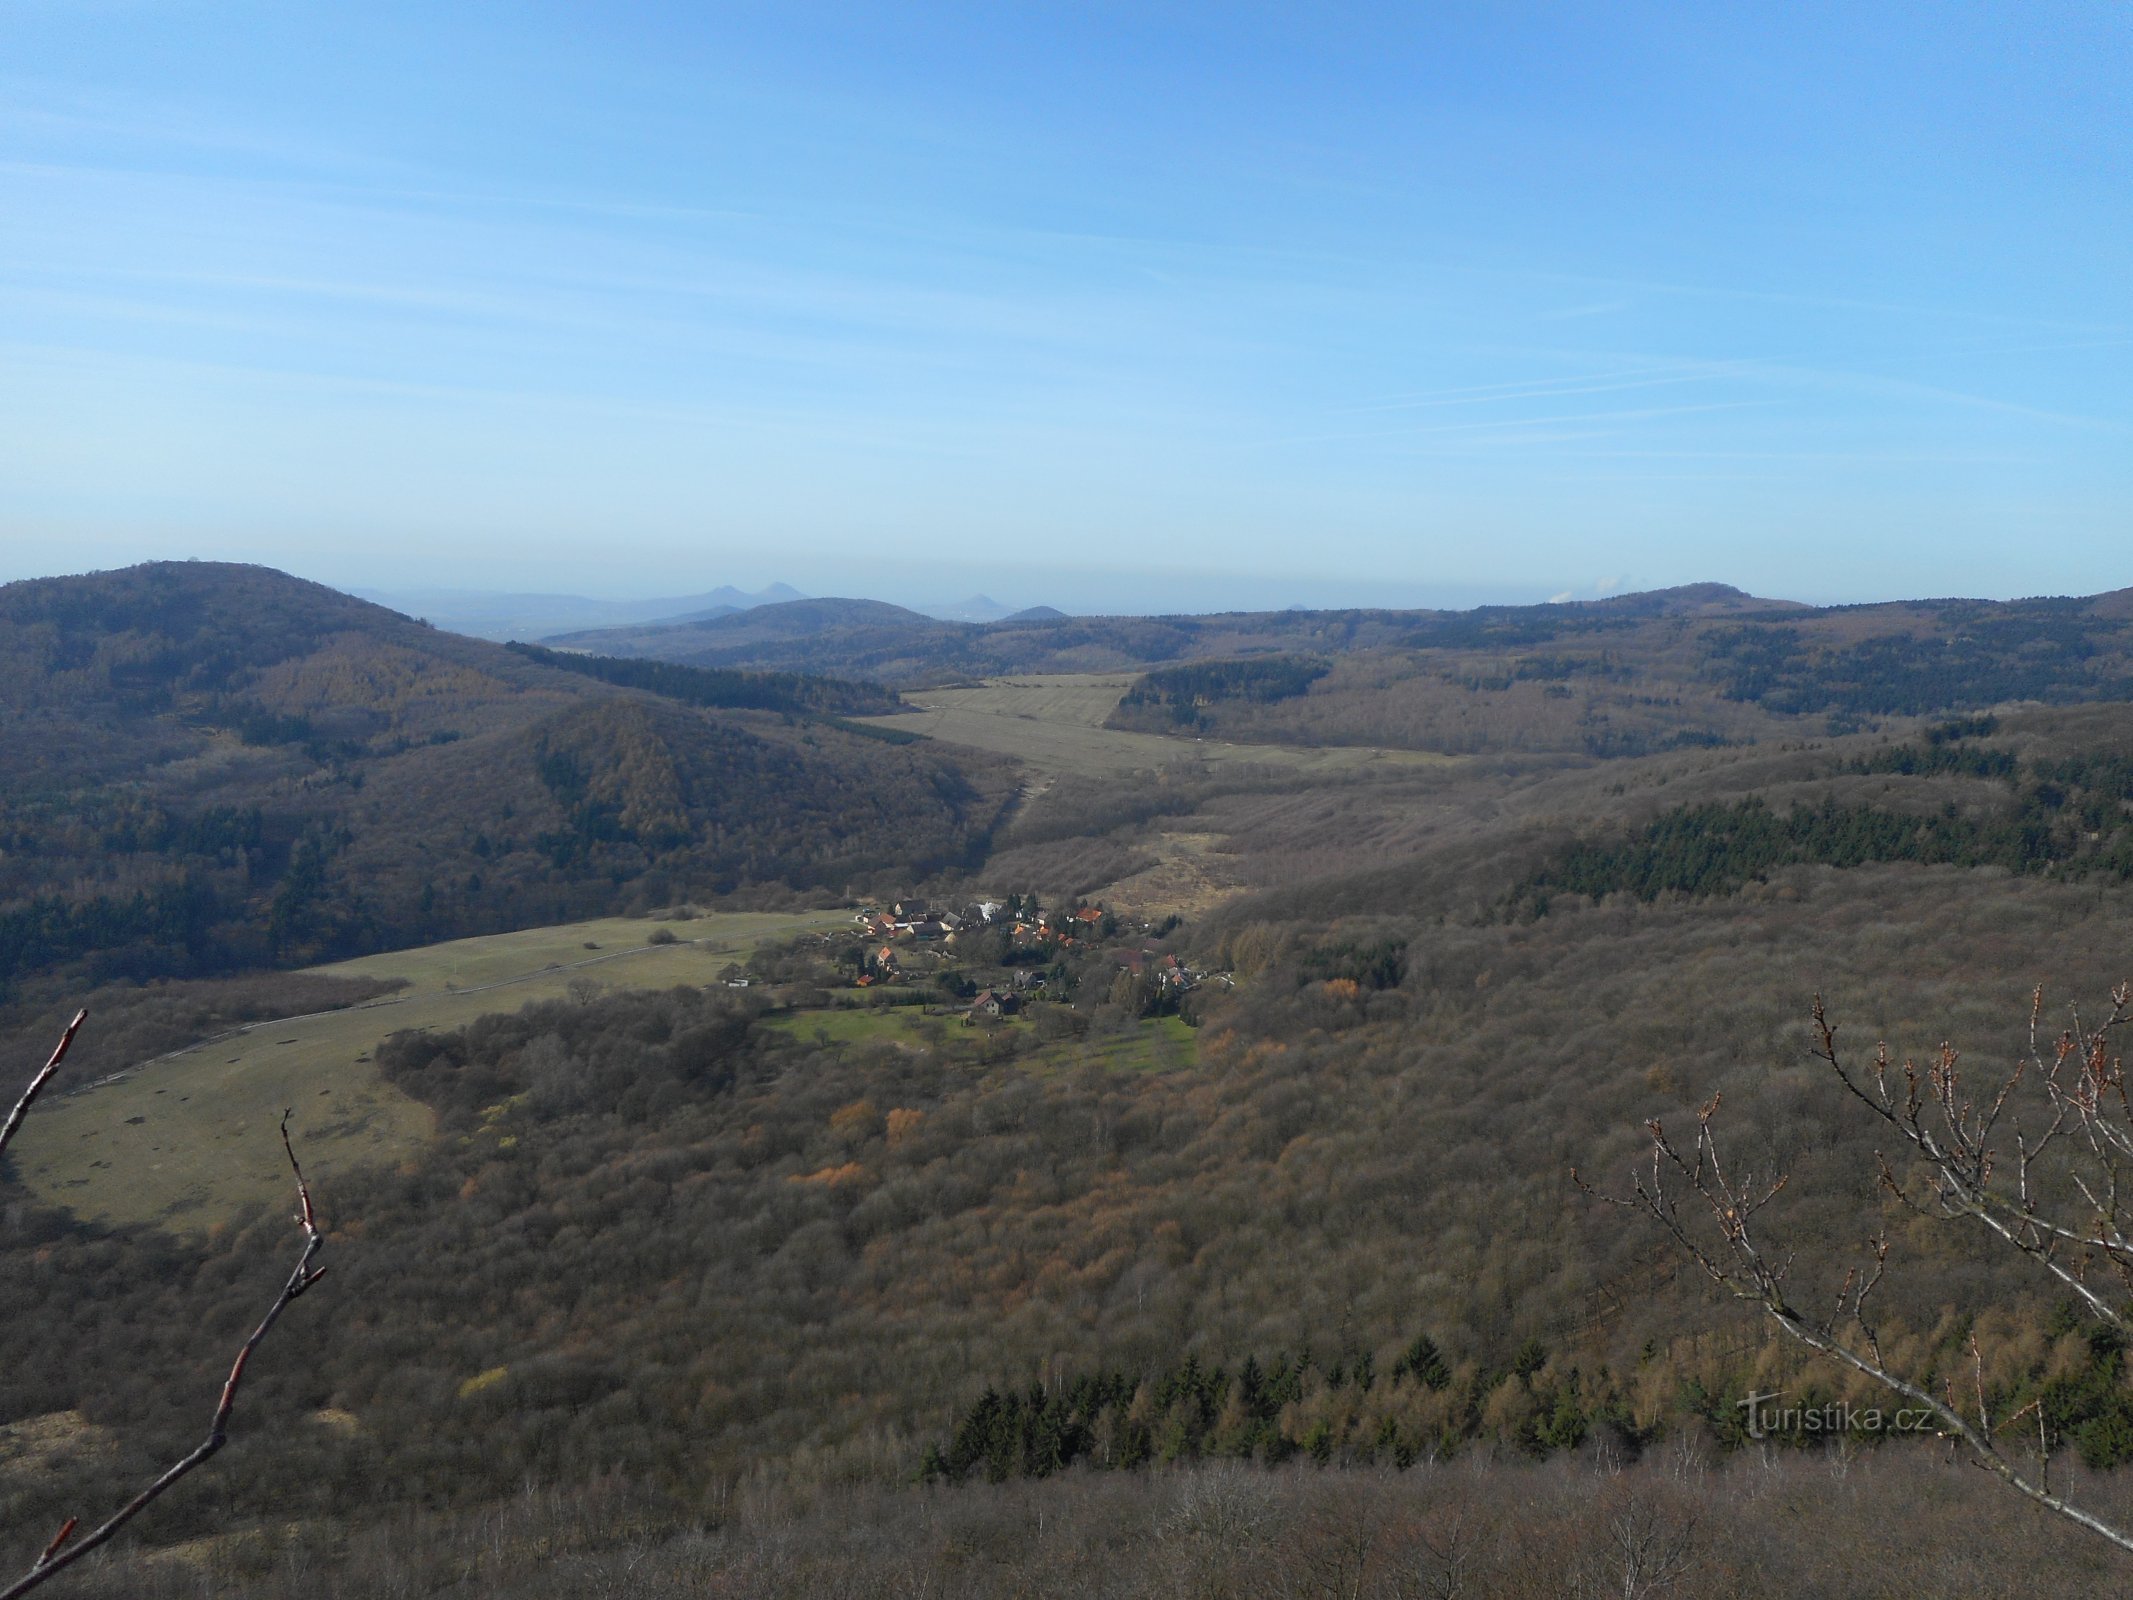 Η θέα από τη Lipská hora προς τα δυτικά...